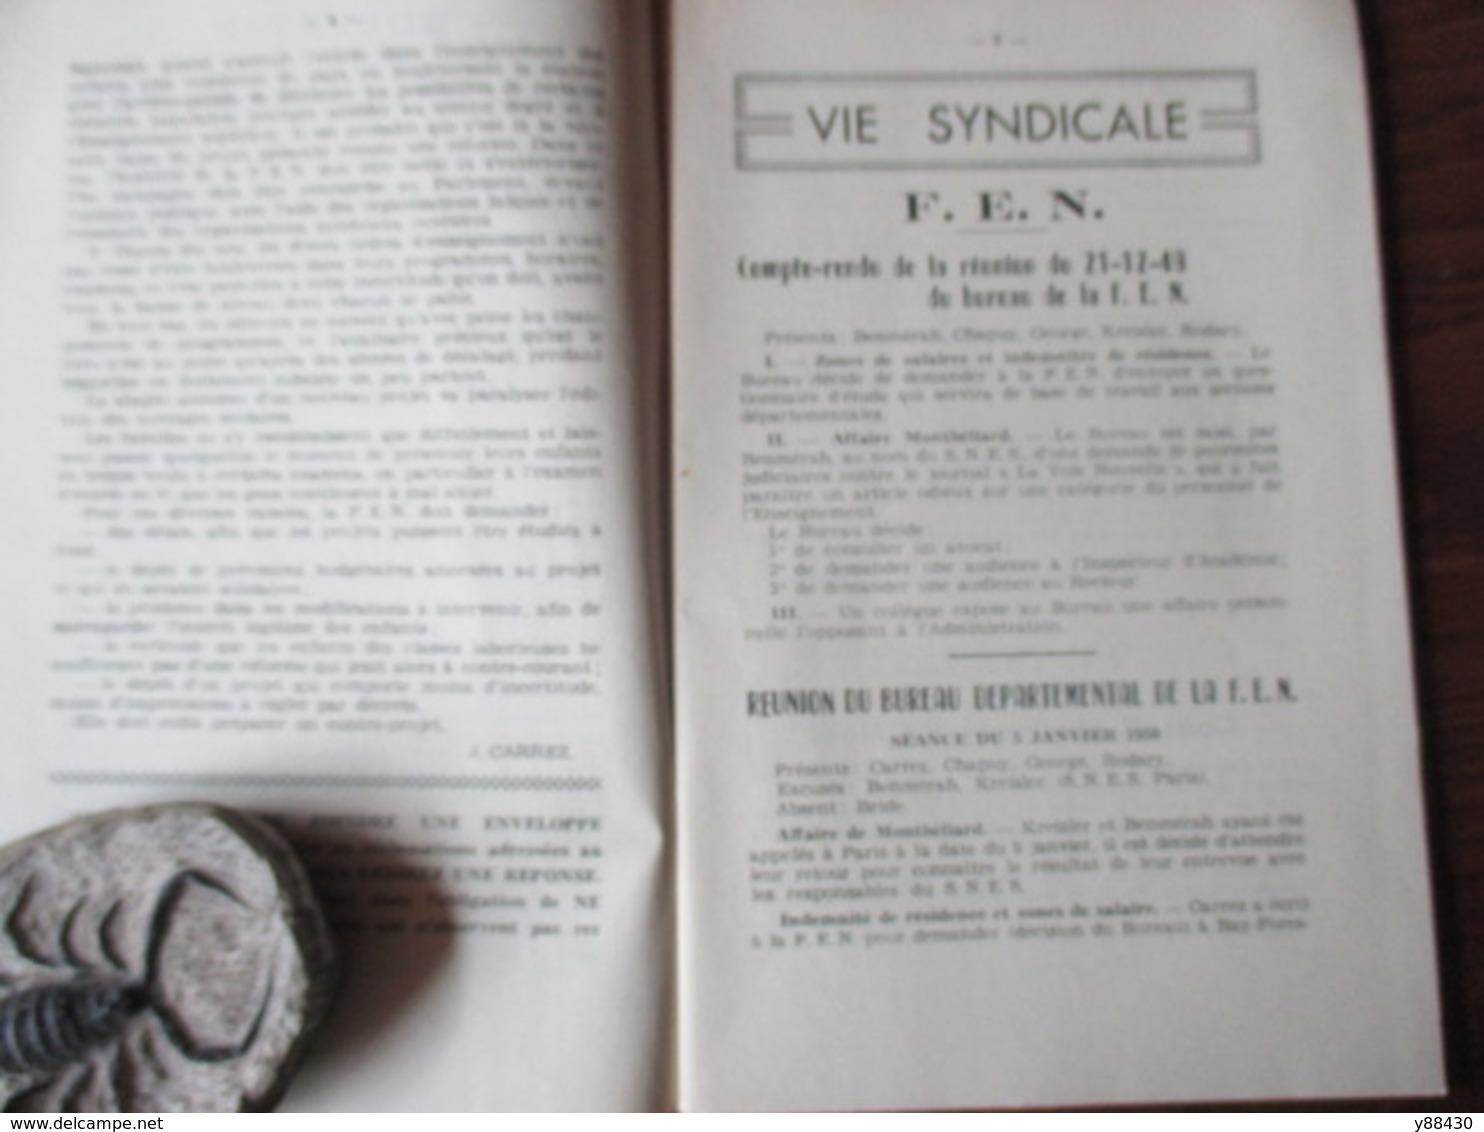 BULLETIN De La Fédération De L'Education Nationale Du DOUBS à BESANCON - Année 1950 . N°3 - 84 Pages -24 Scan - Schede Didattiche